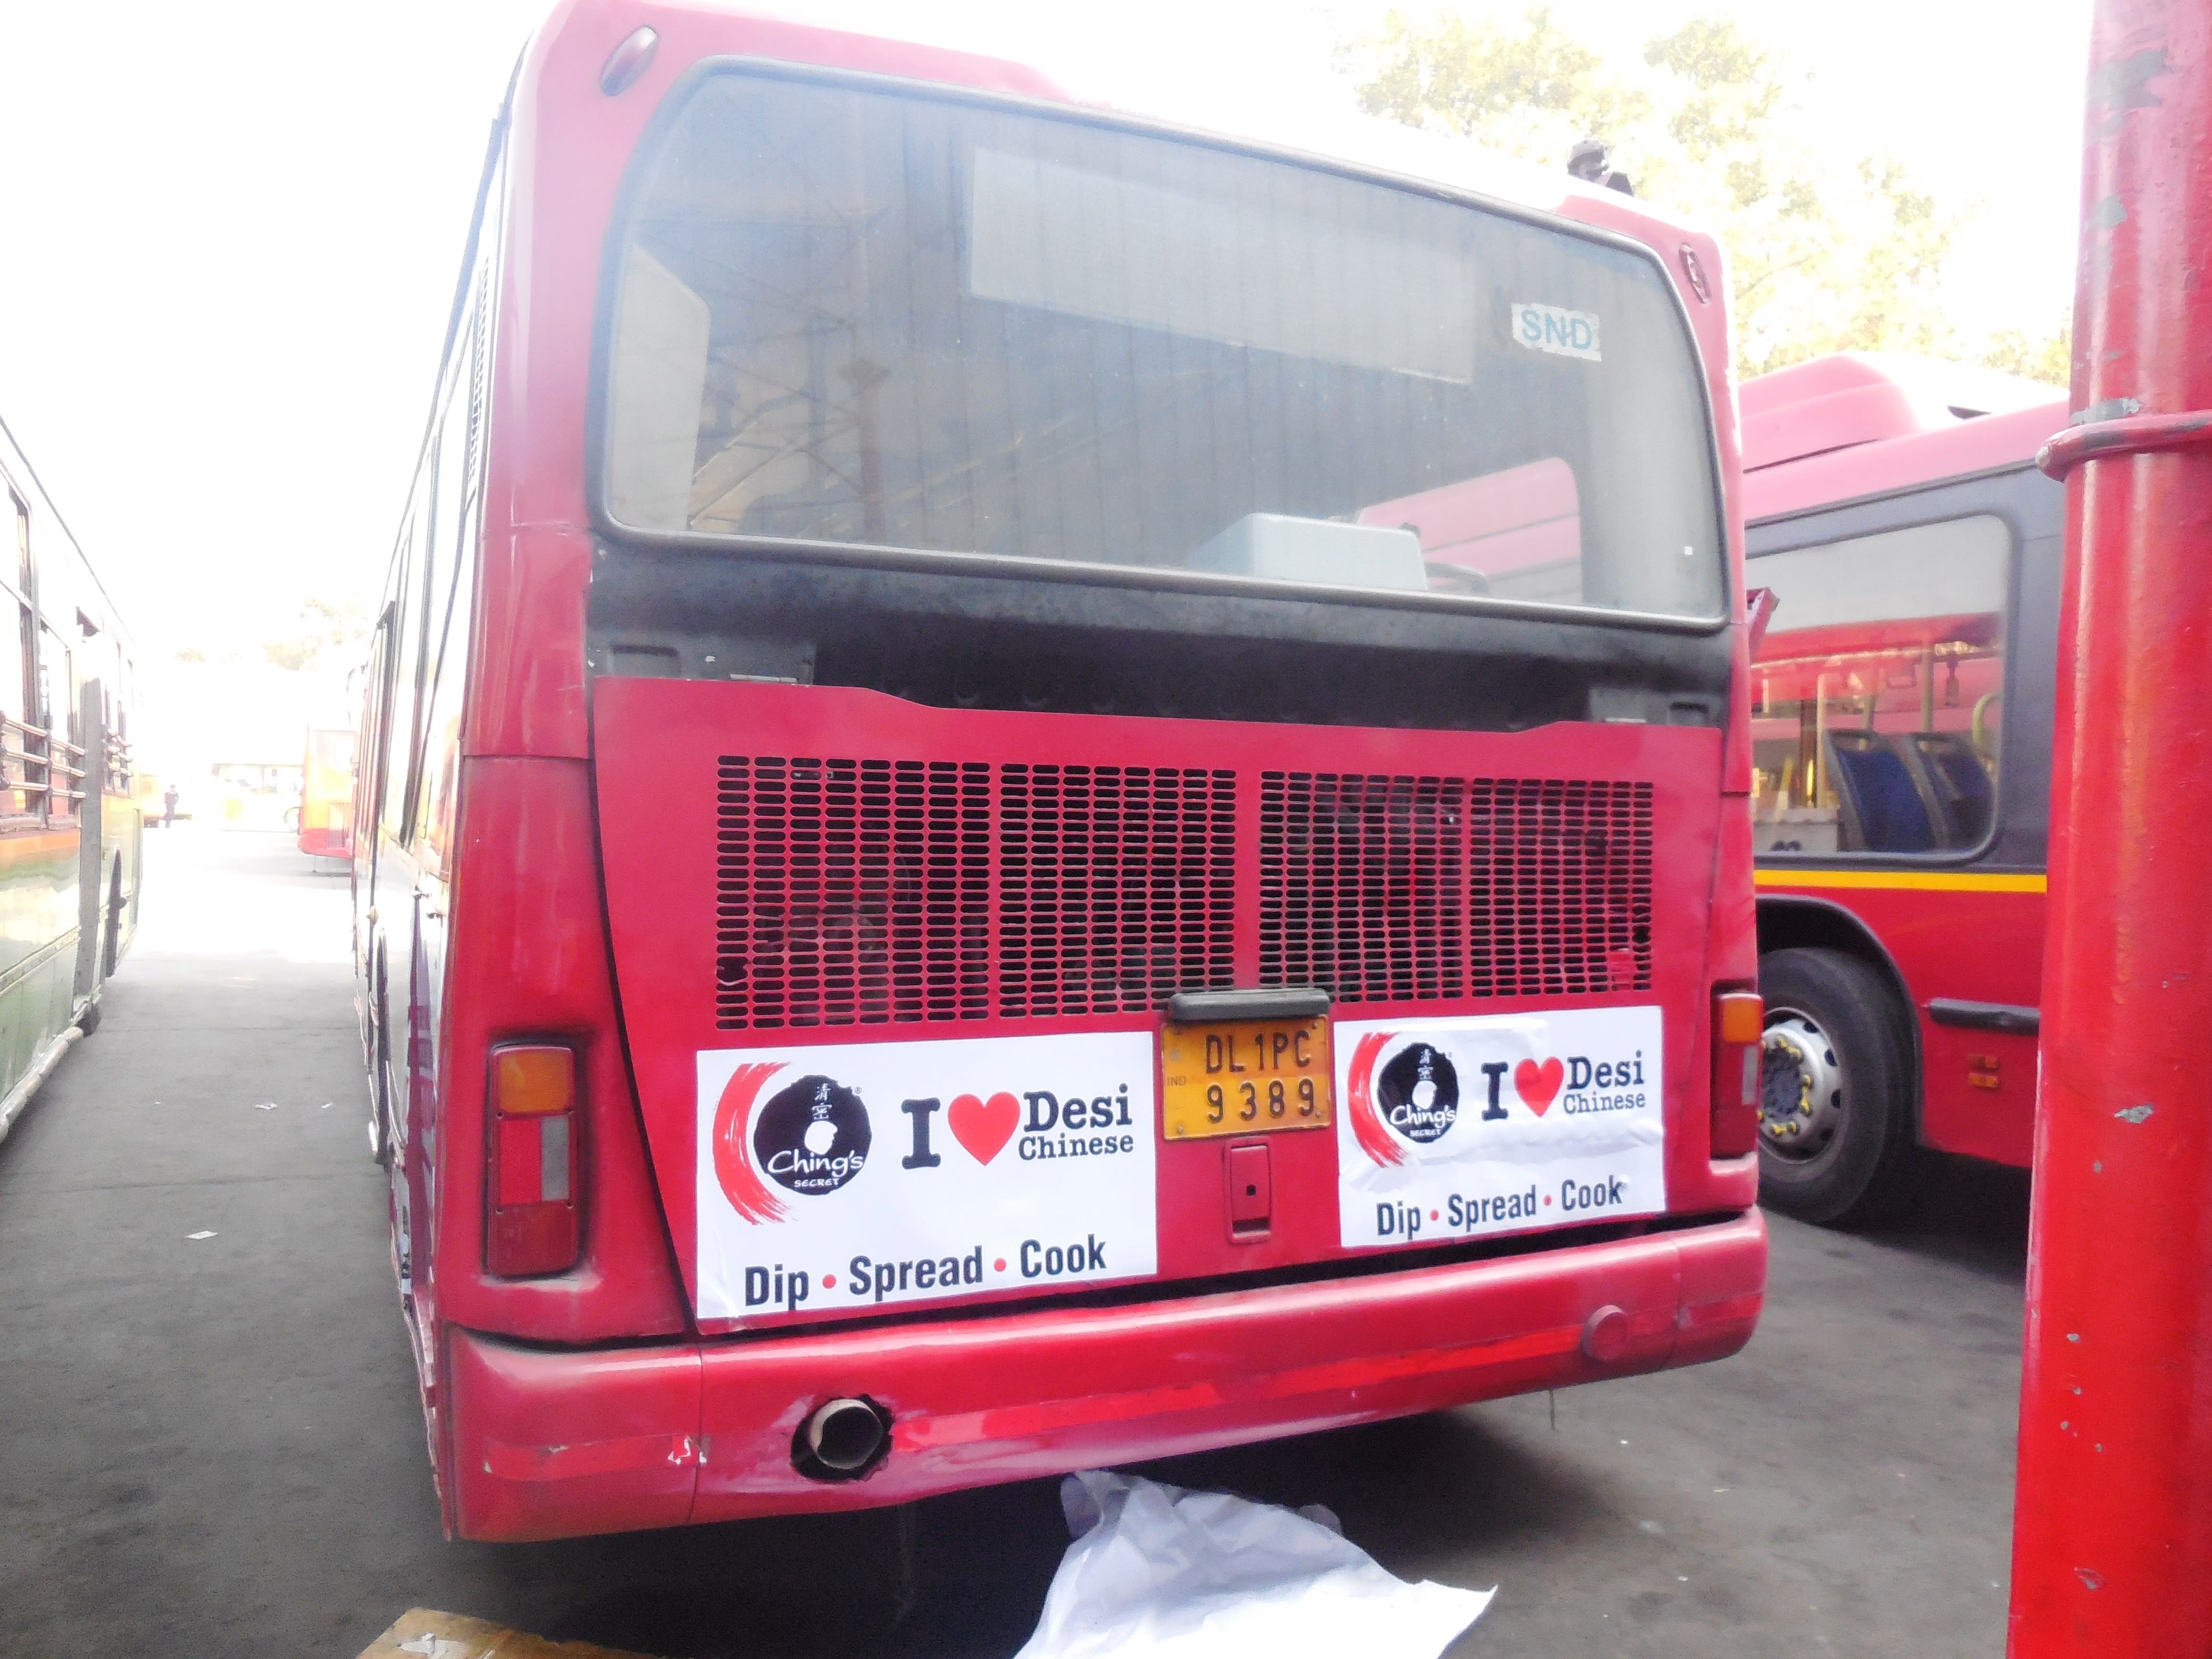 AC Bus - Delhi - Full Bus - Exterior Advertising Option - 4 -DTC Bus